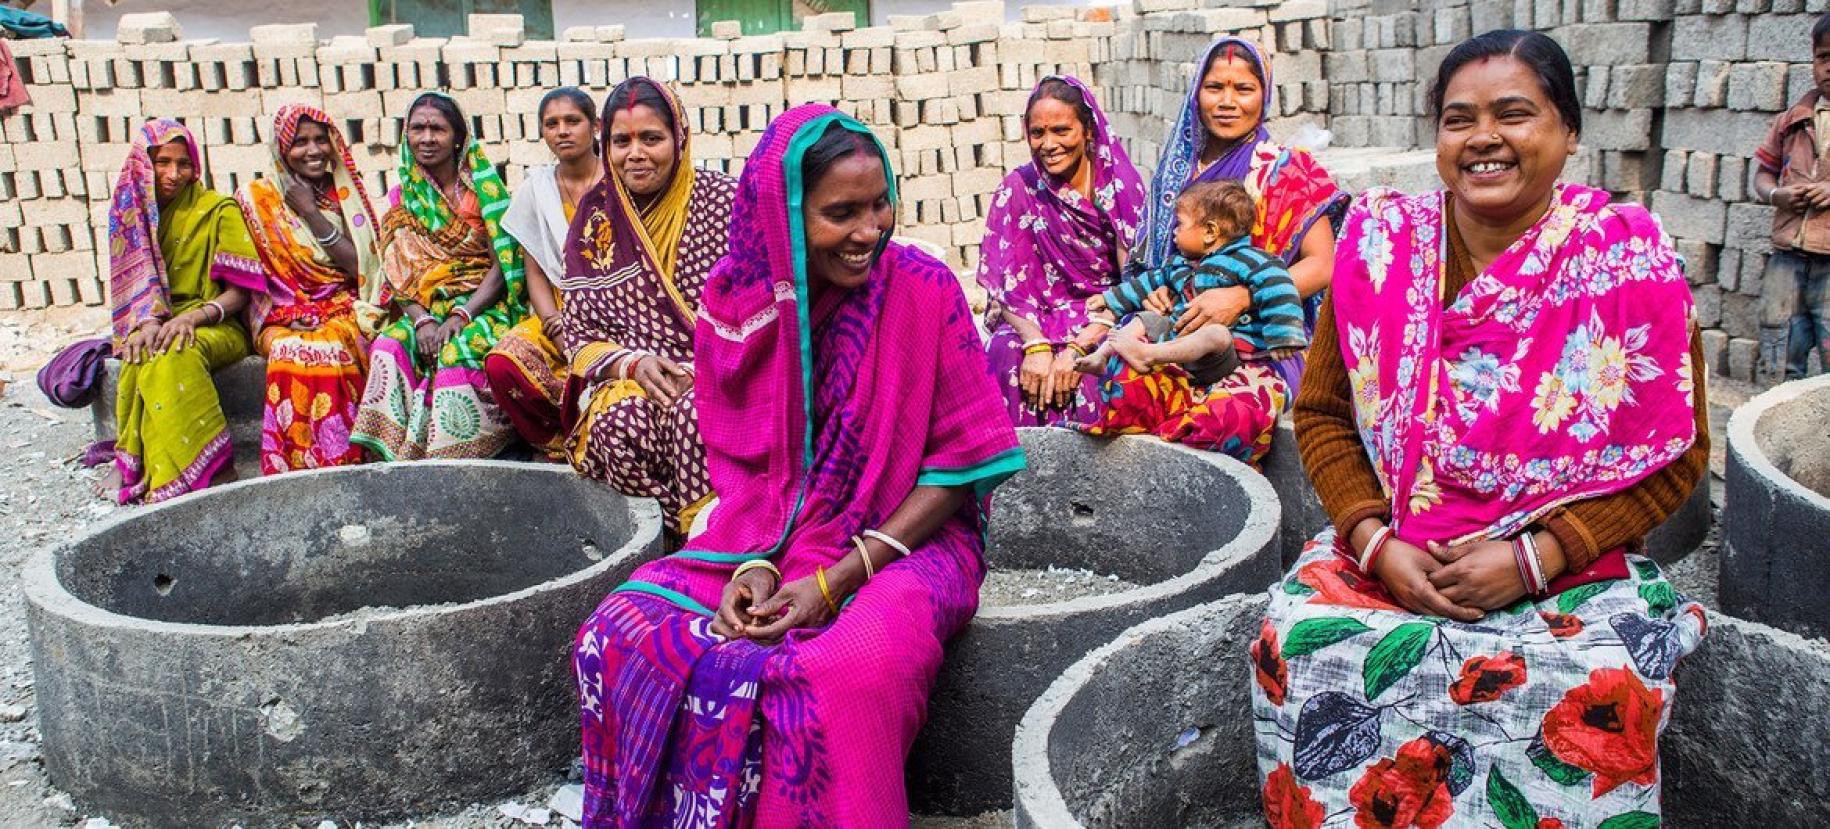 Mujeres vestidas con saris de colores se sientan y hablan, con un fondo de ladrillos para una futura estructura detrás de ellas.